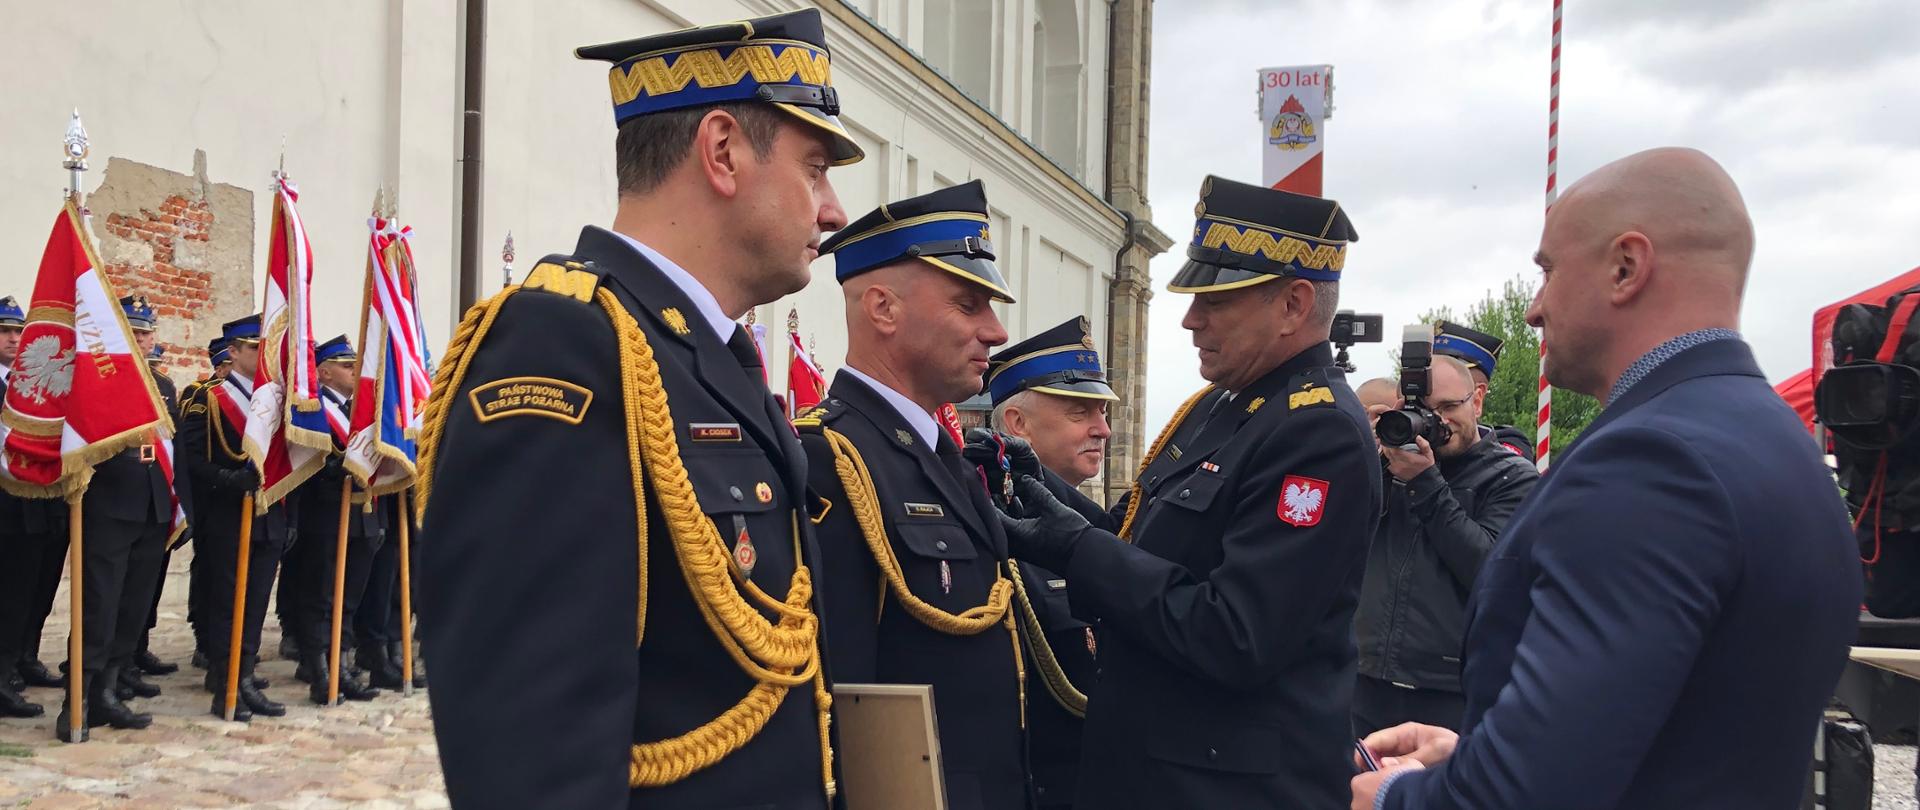 Na zdjęciu zastępca komendanta głównego PSP przypina medal strażakowi PSP 